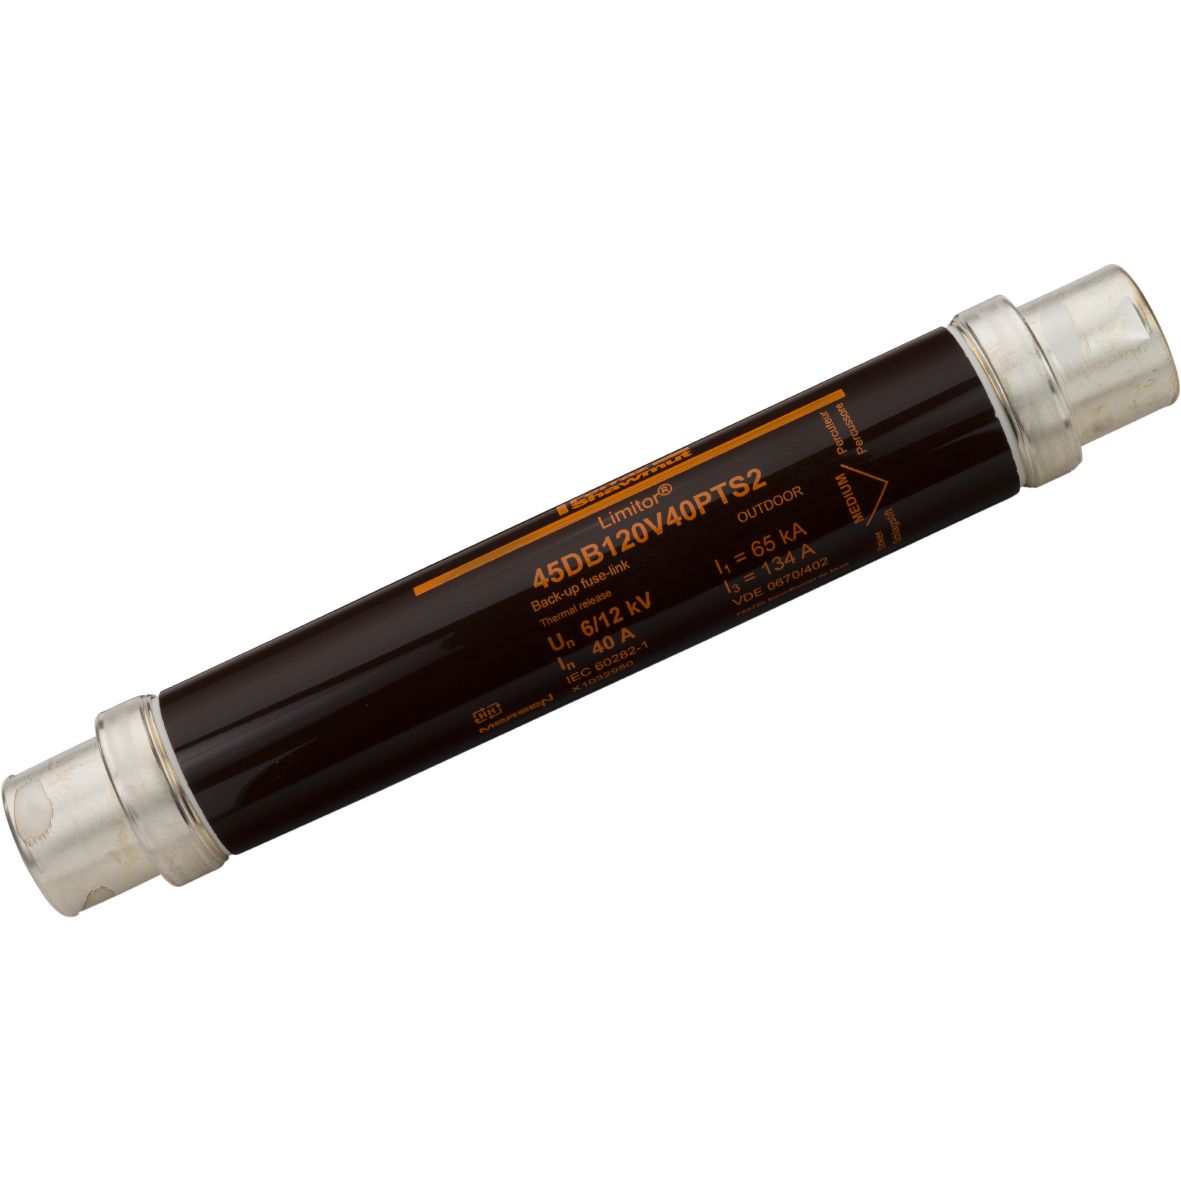 X1032950 - HV fuse DIN 43625, 12kV, 40A, 292mm, 45mm, thermal striker